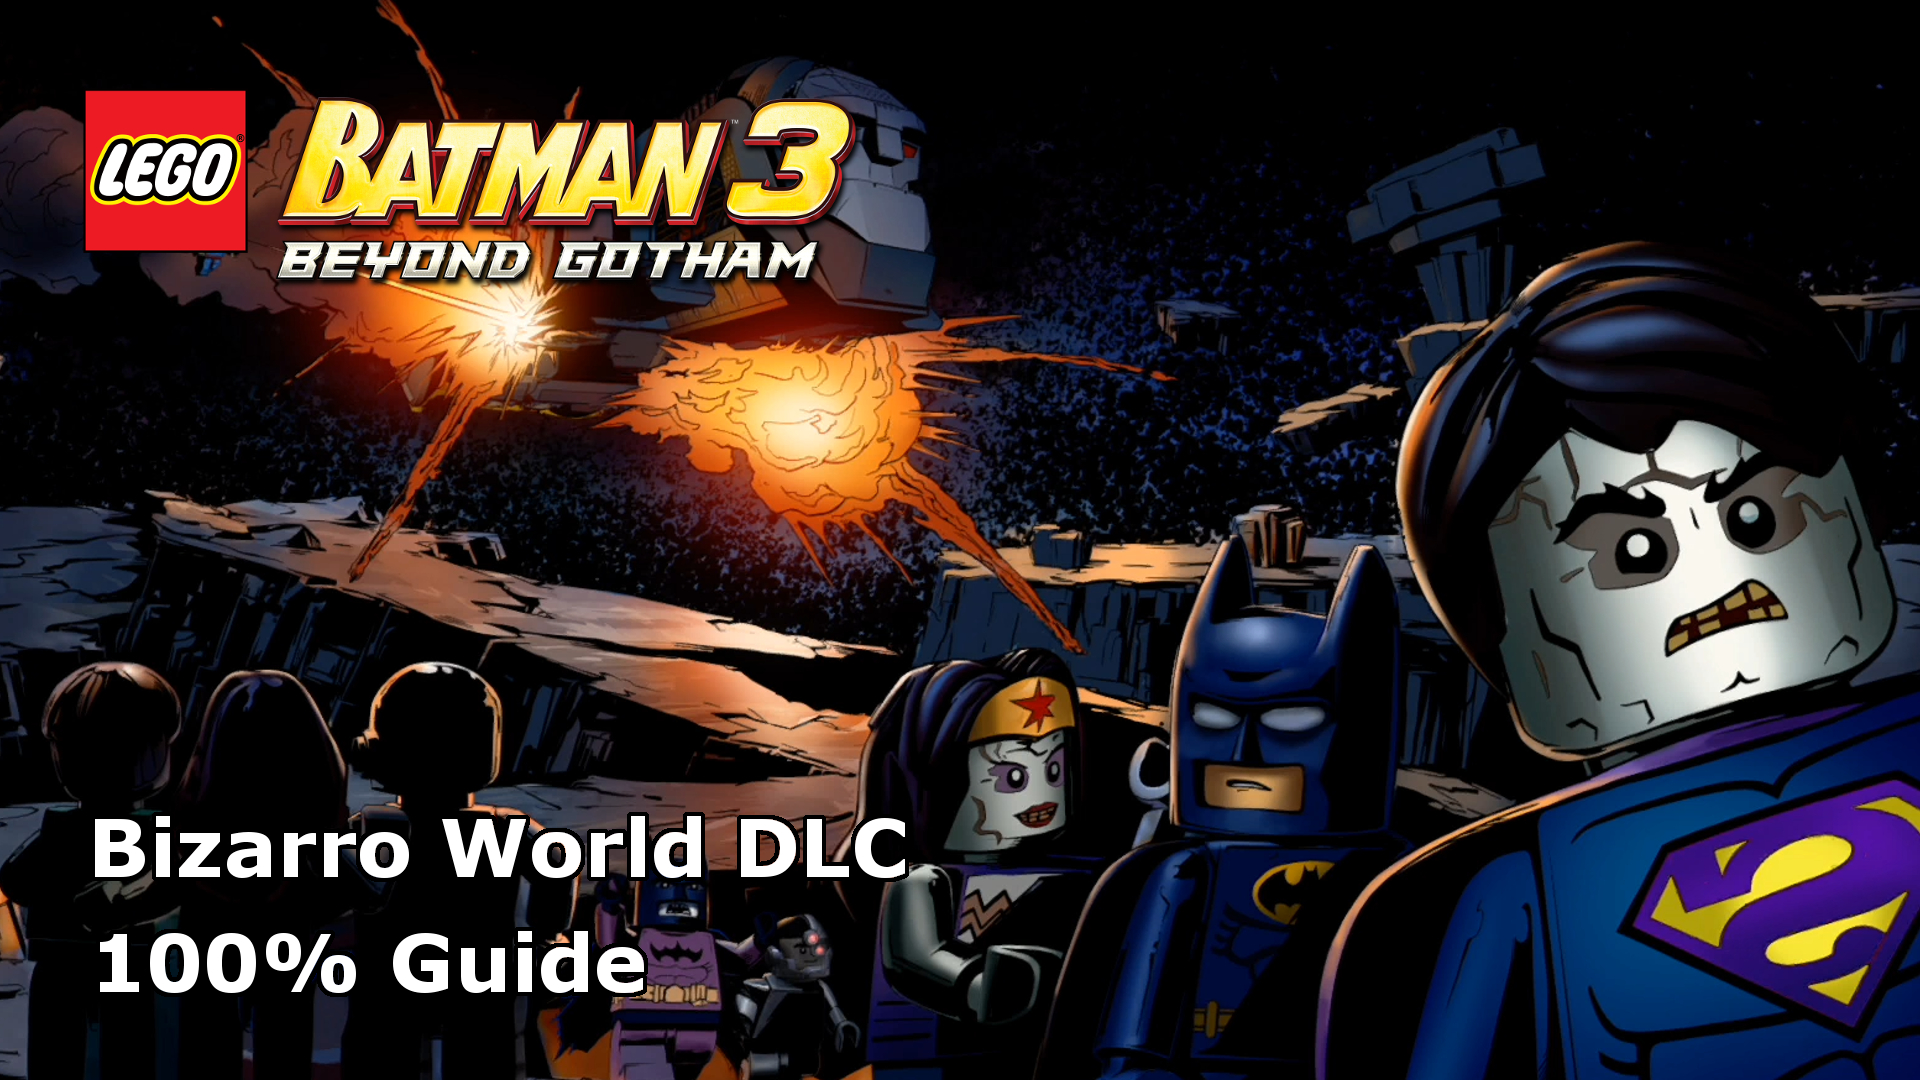 lego batman 3 beyond gotham data3.cab error